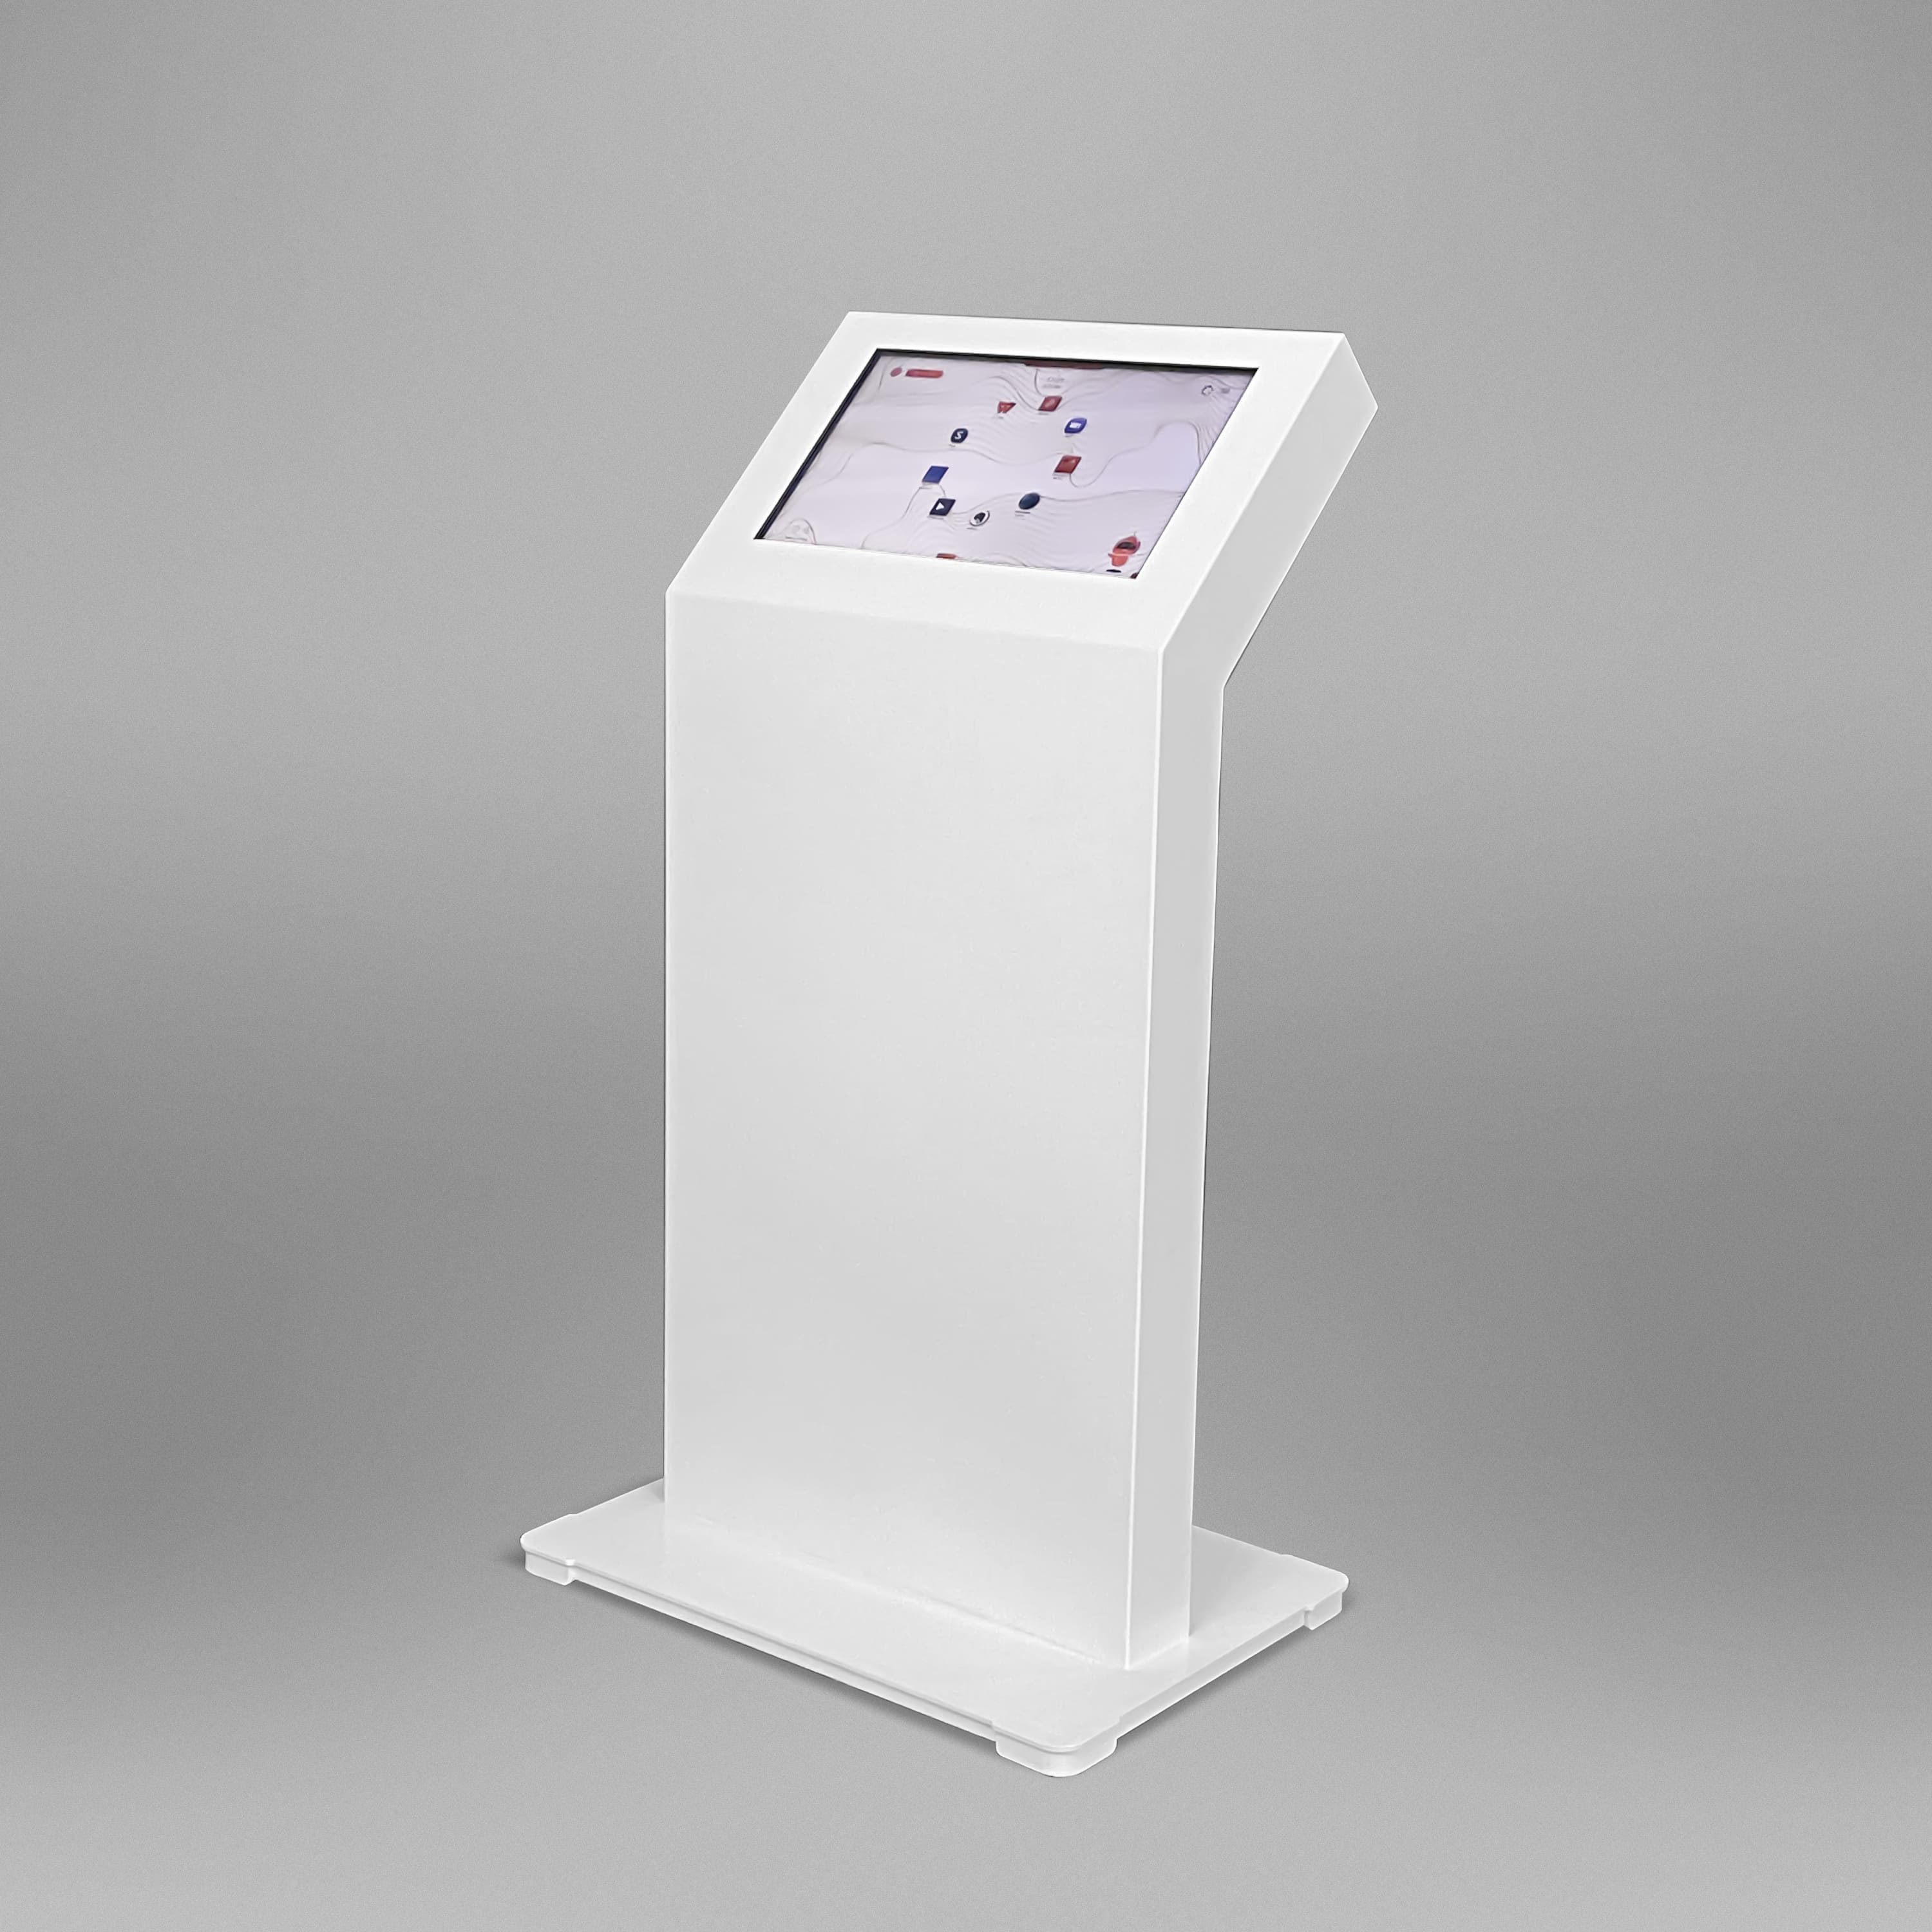 Интерактивный сенсорный киоск Lazer Mini 21.5 галлерея фото-10